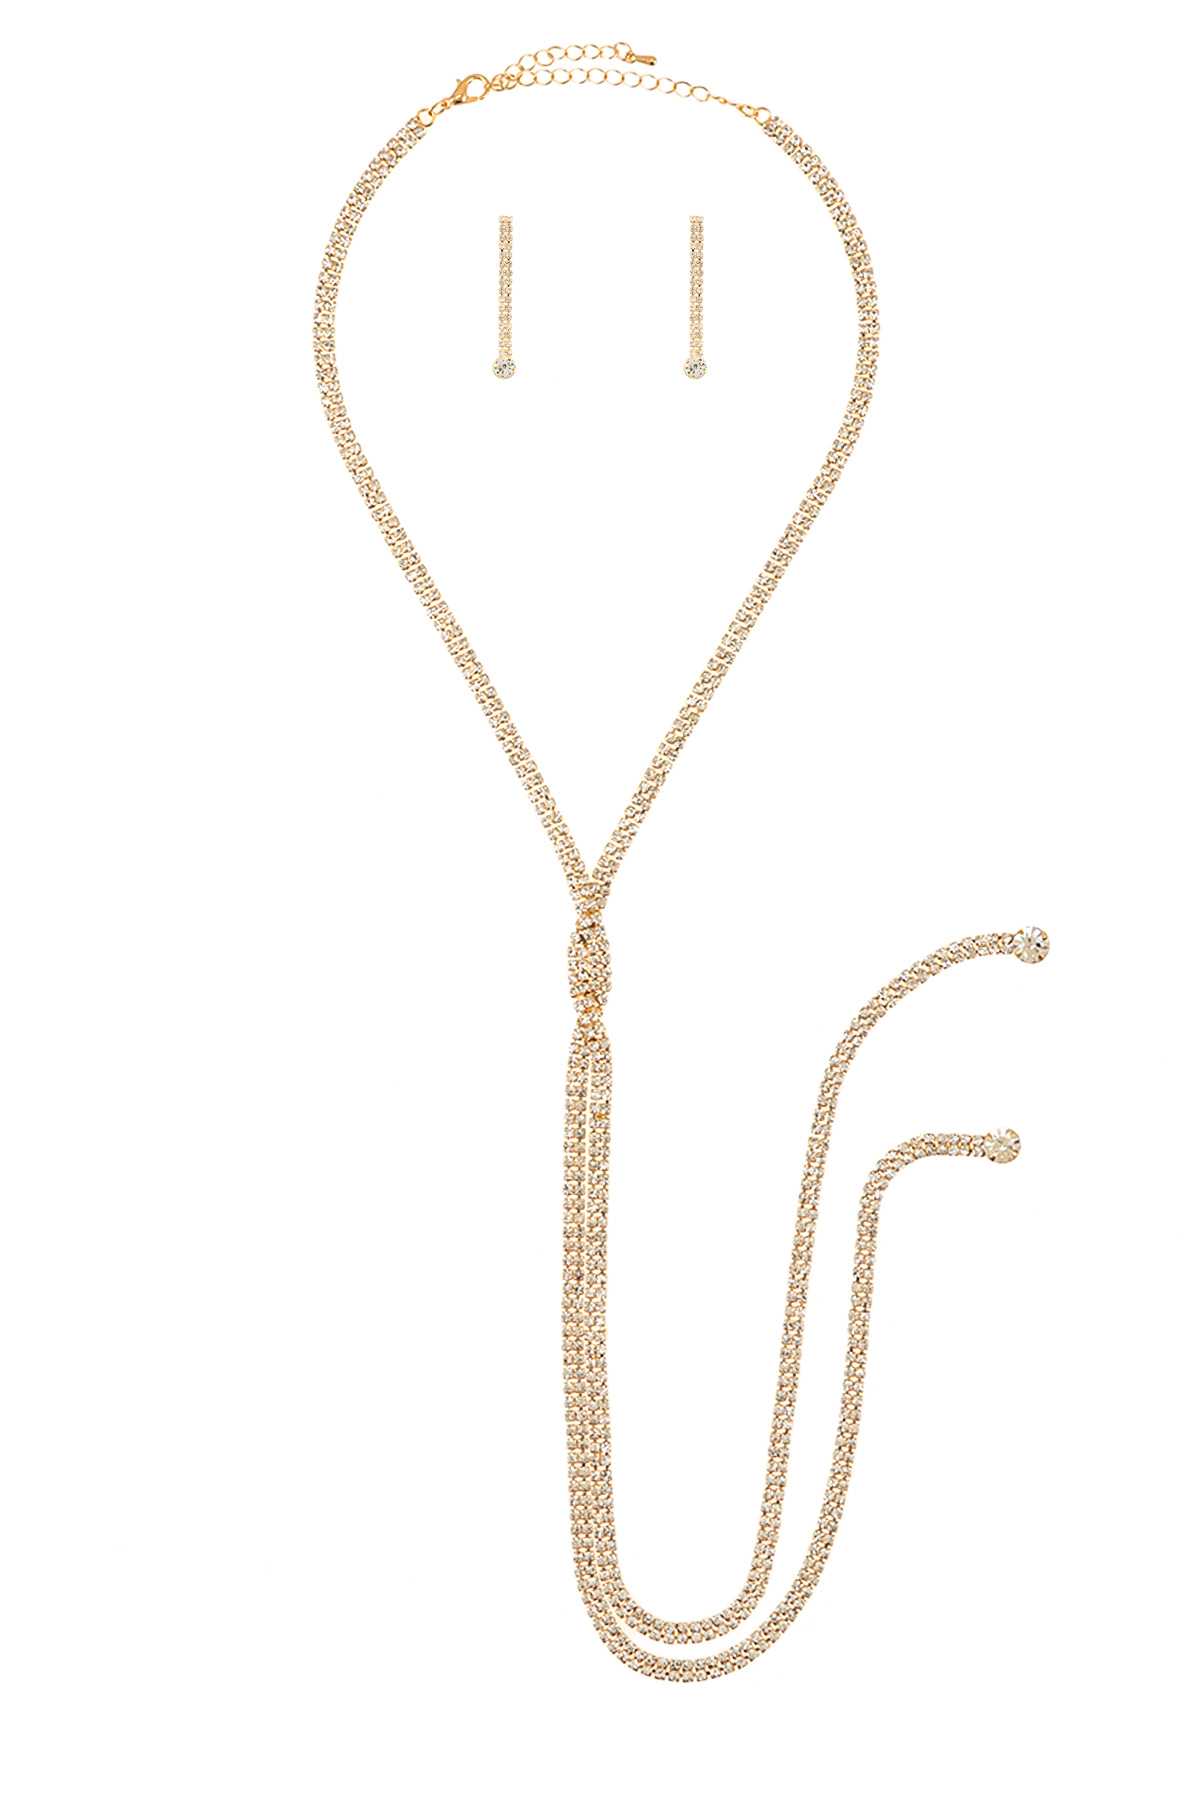 Rhinestone Braided Long Necklace Set